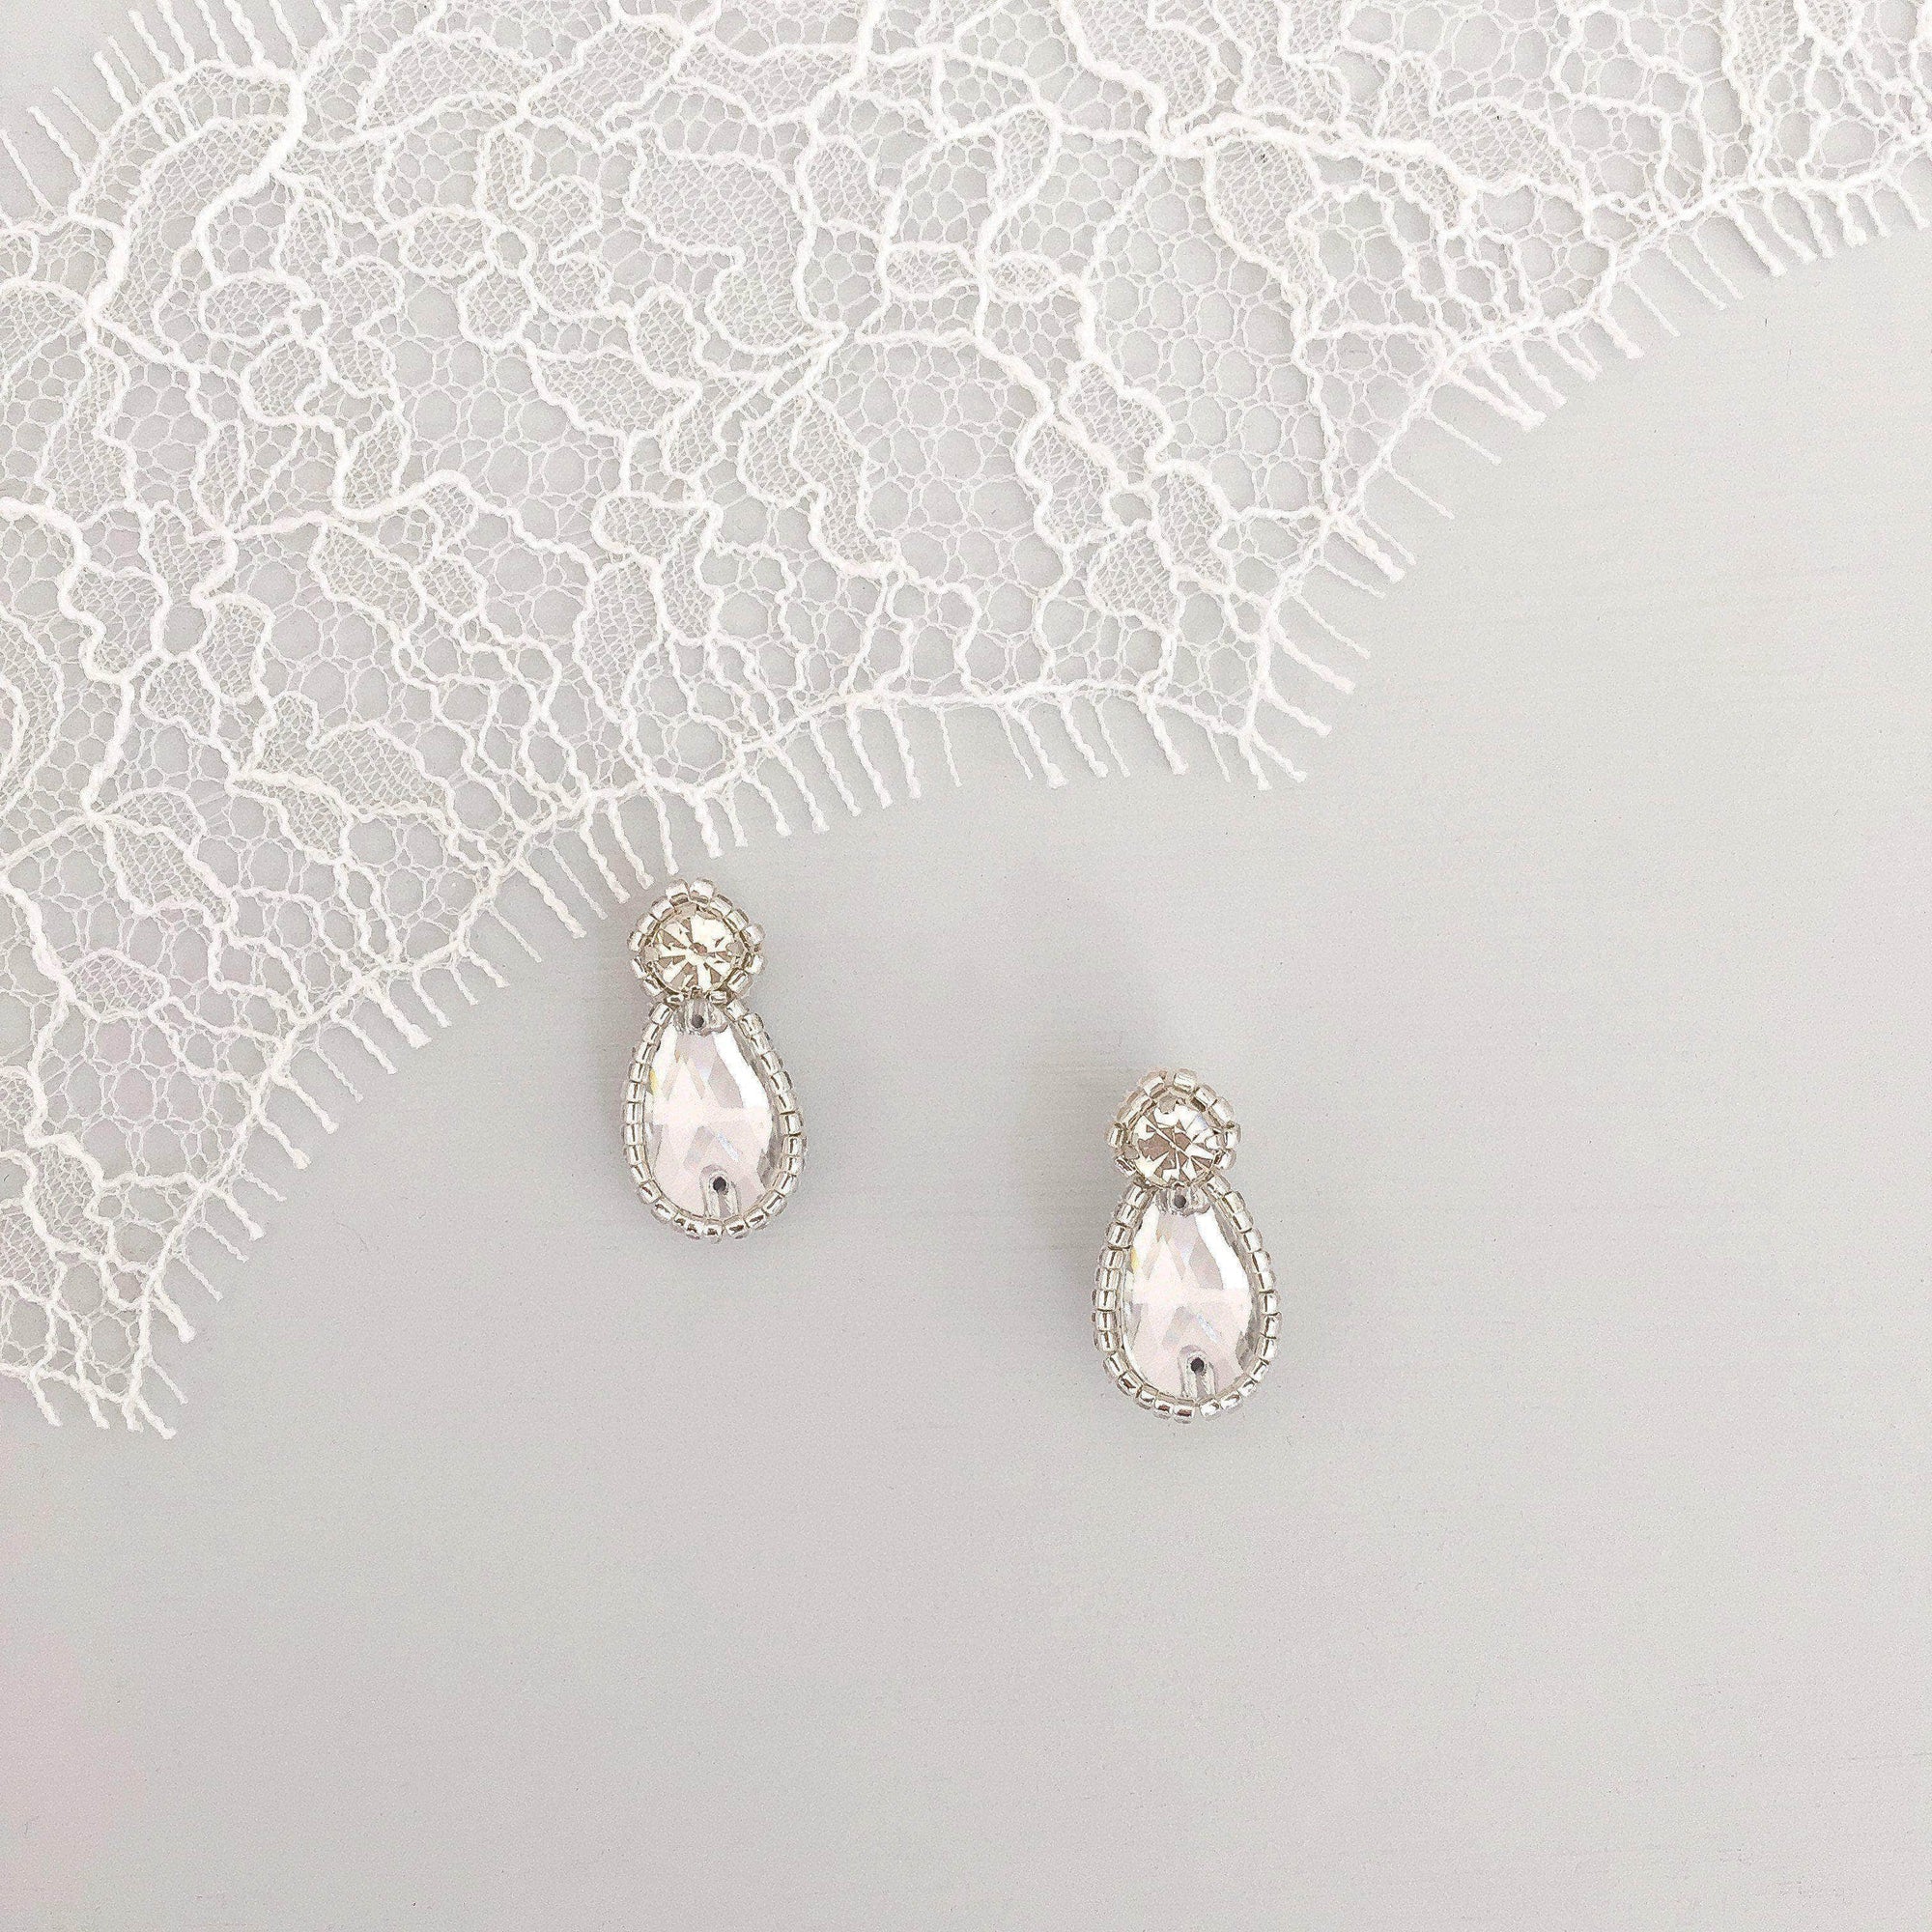 Wedding Earring Silver Crystal wedding earrings - 'Zoe'